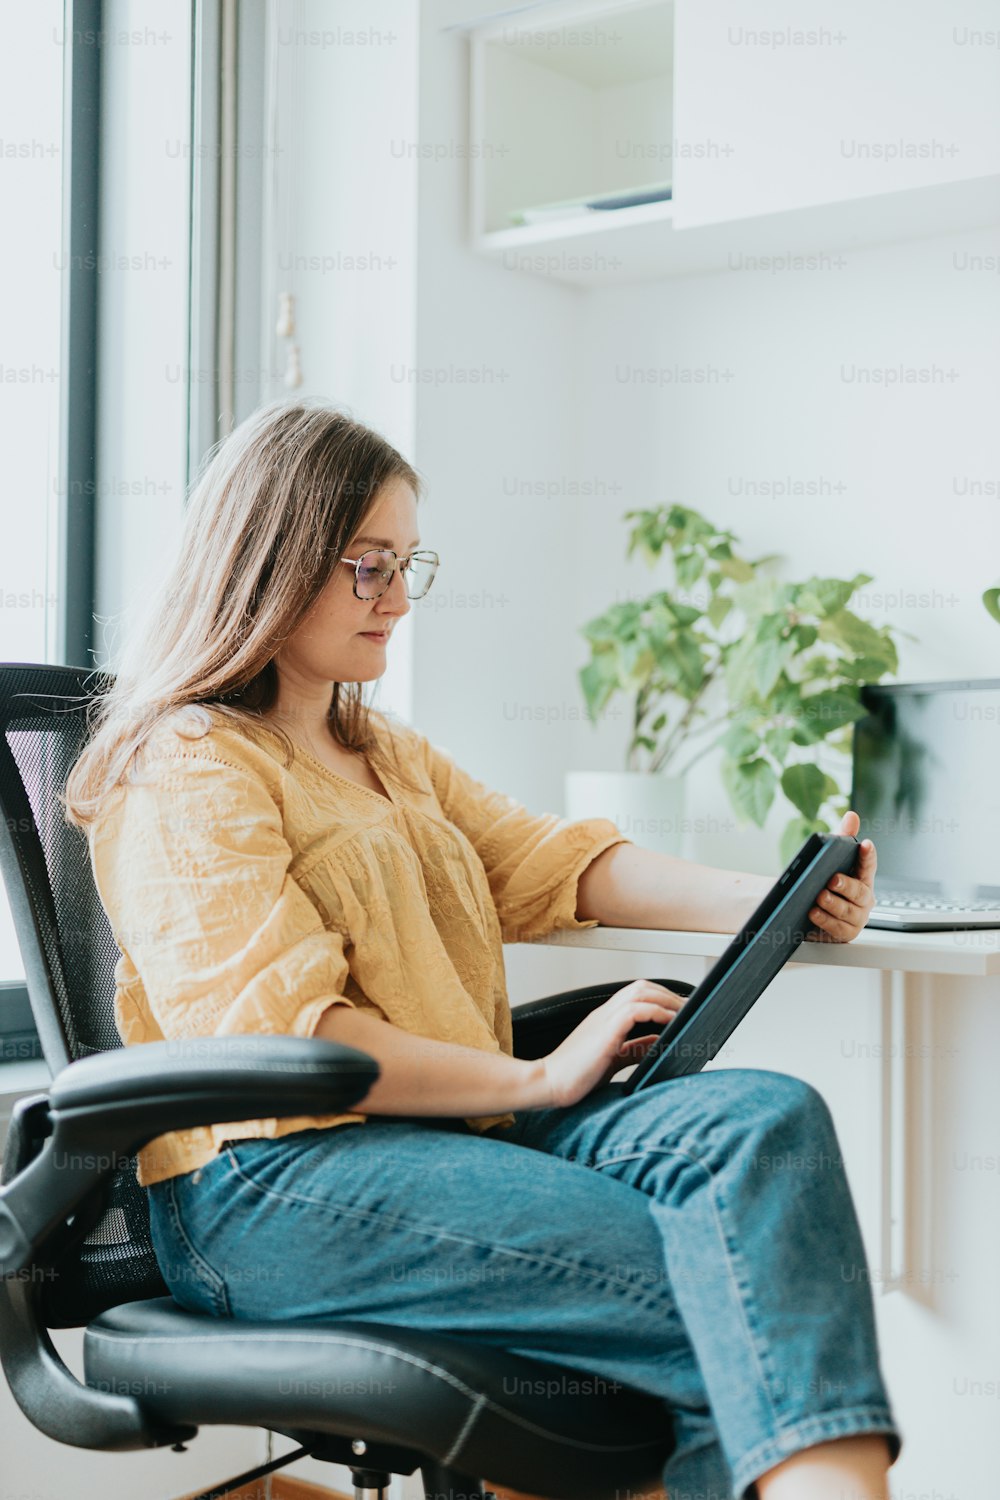 Una mujer sentada en una silla usando una computadora portátil